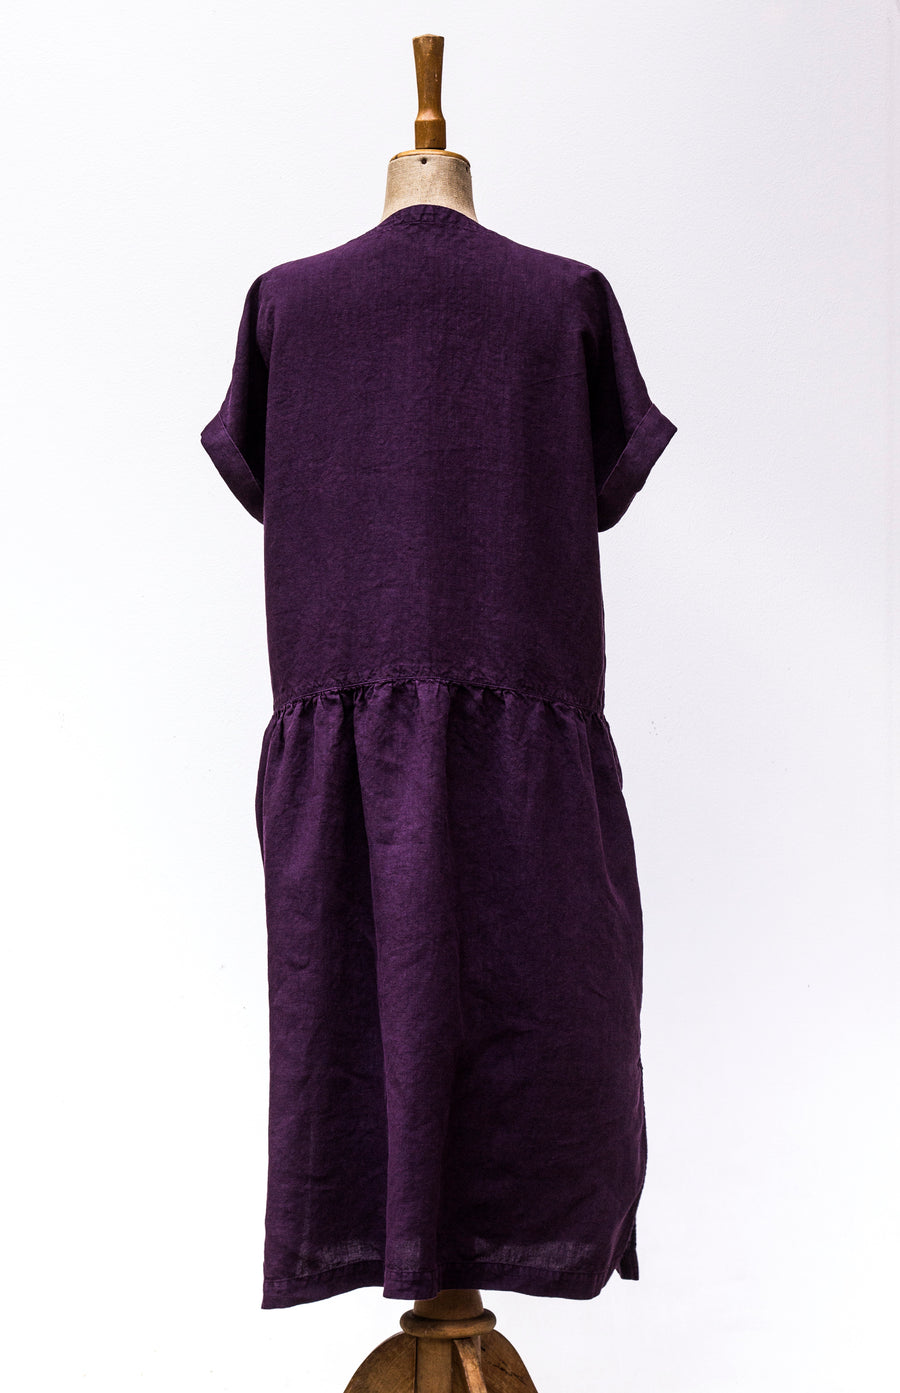 Podzimní venkovské šaty v odstínu Shadow Purple